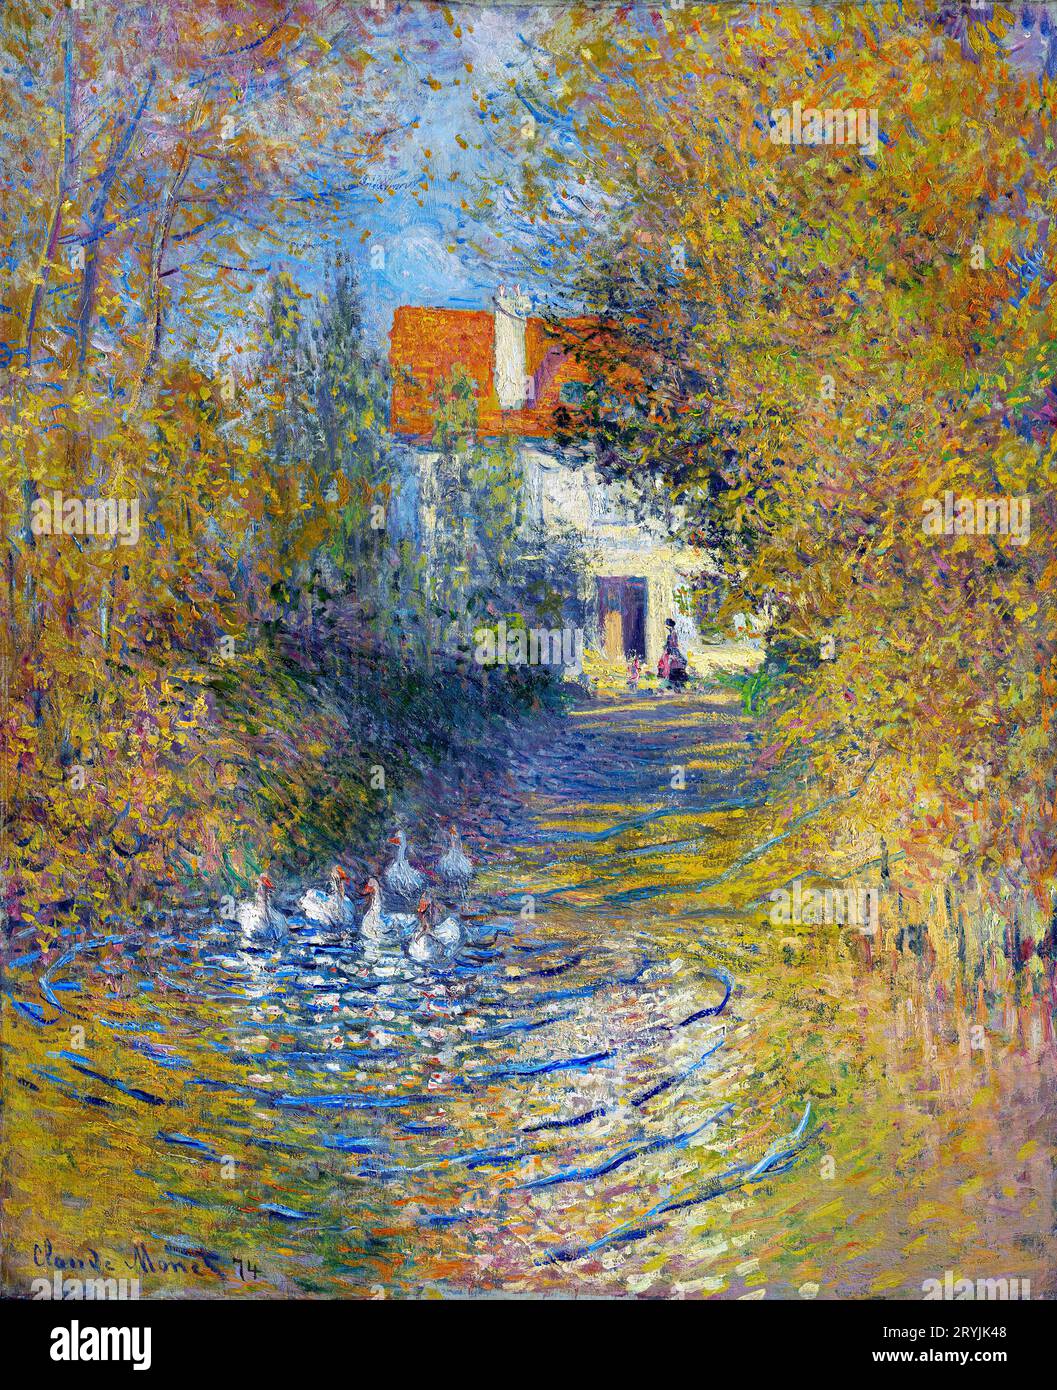 La peinture célèbre de Claude Monet, les Oies (1874). Original de l'Institut d'art Sterling and Francine Clark. Banque D'Images